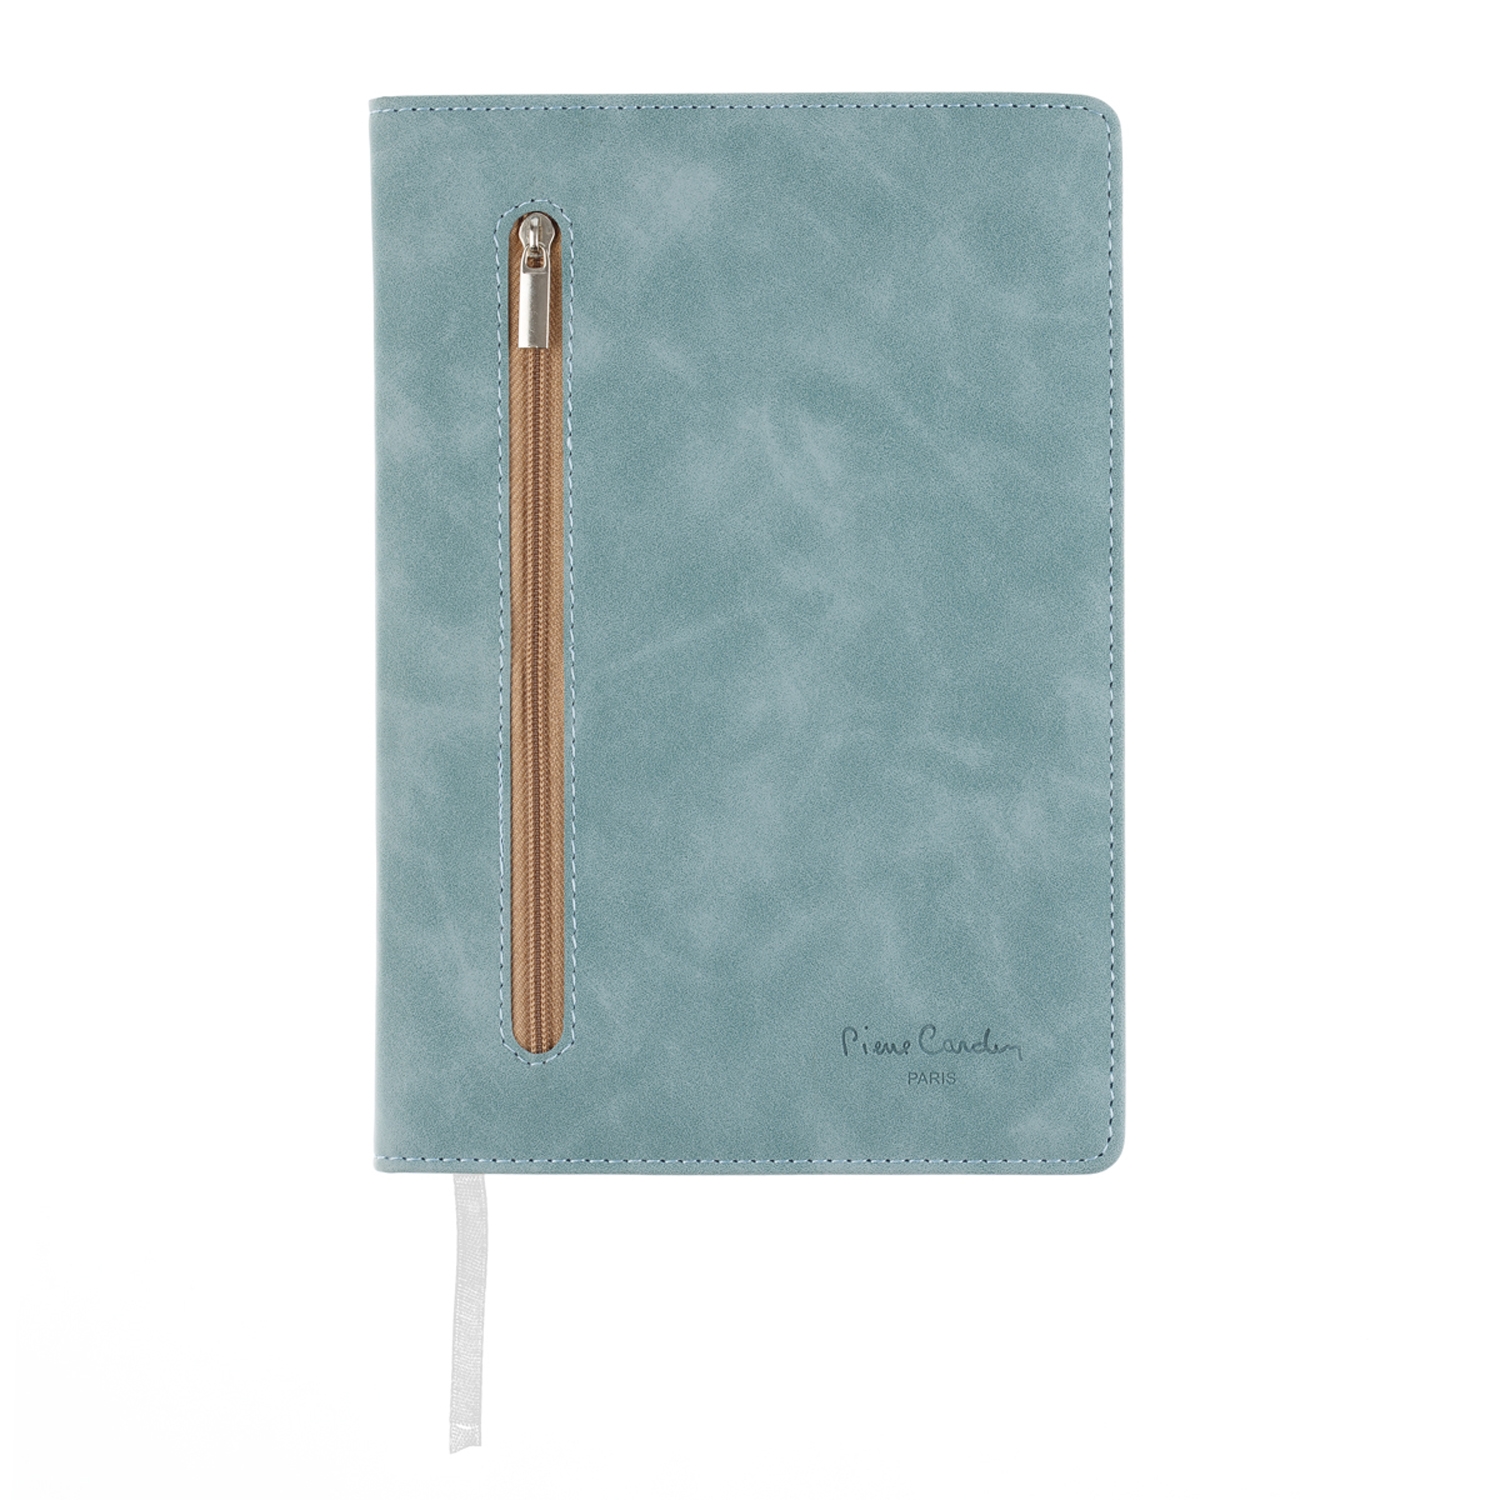 Записная книжка Pierre Cardin голубая, 14 х 20,5 см, голубой